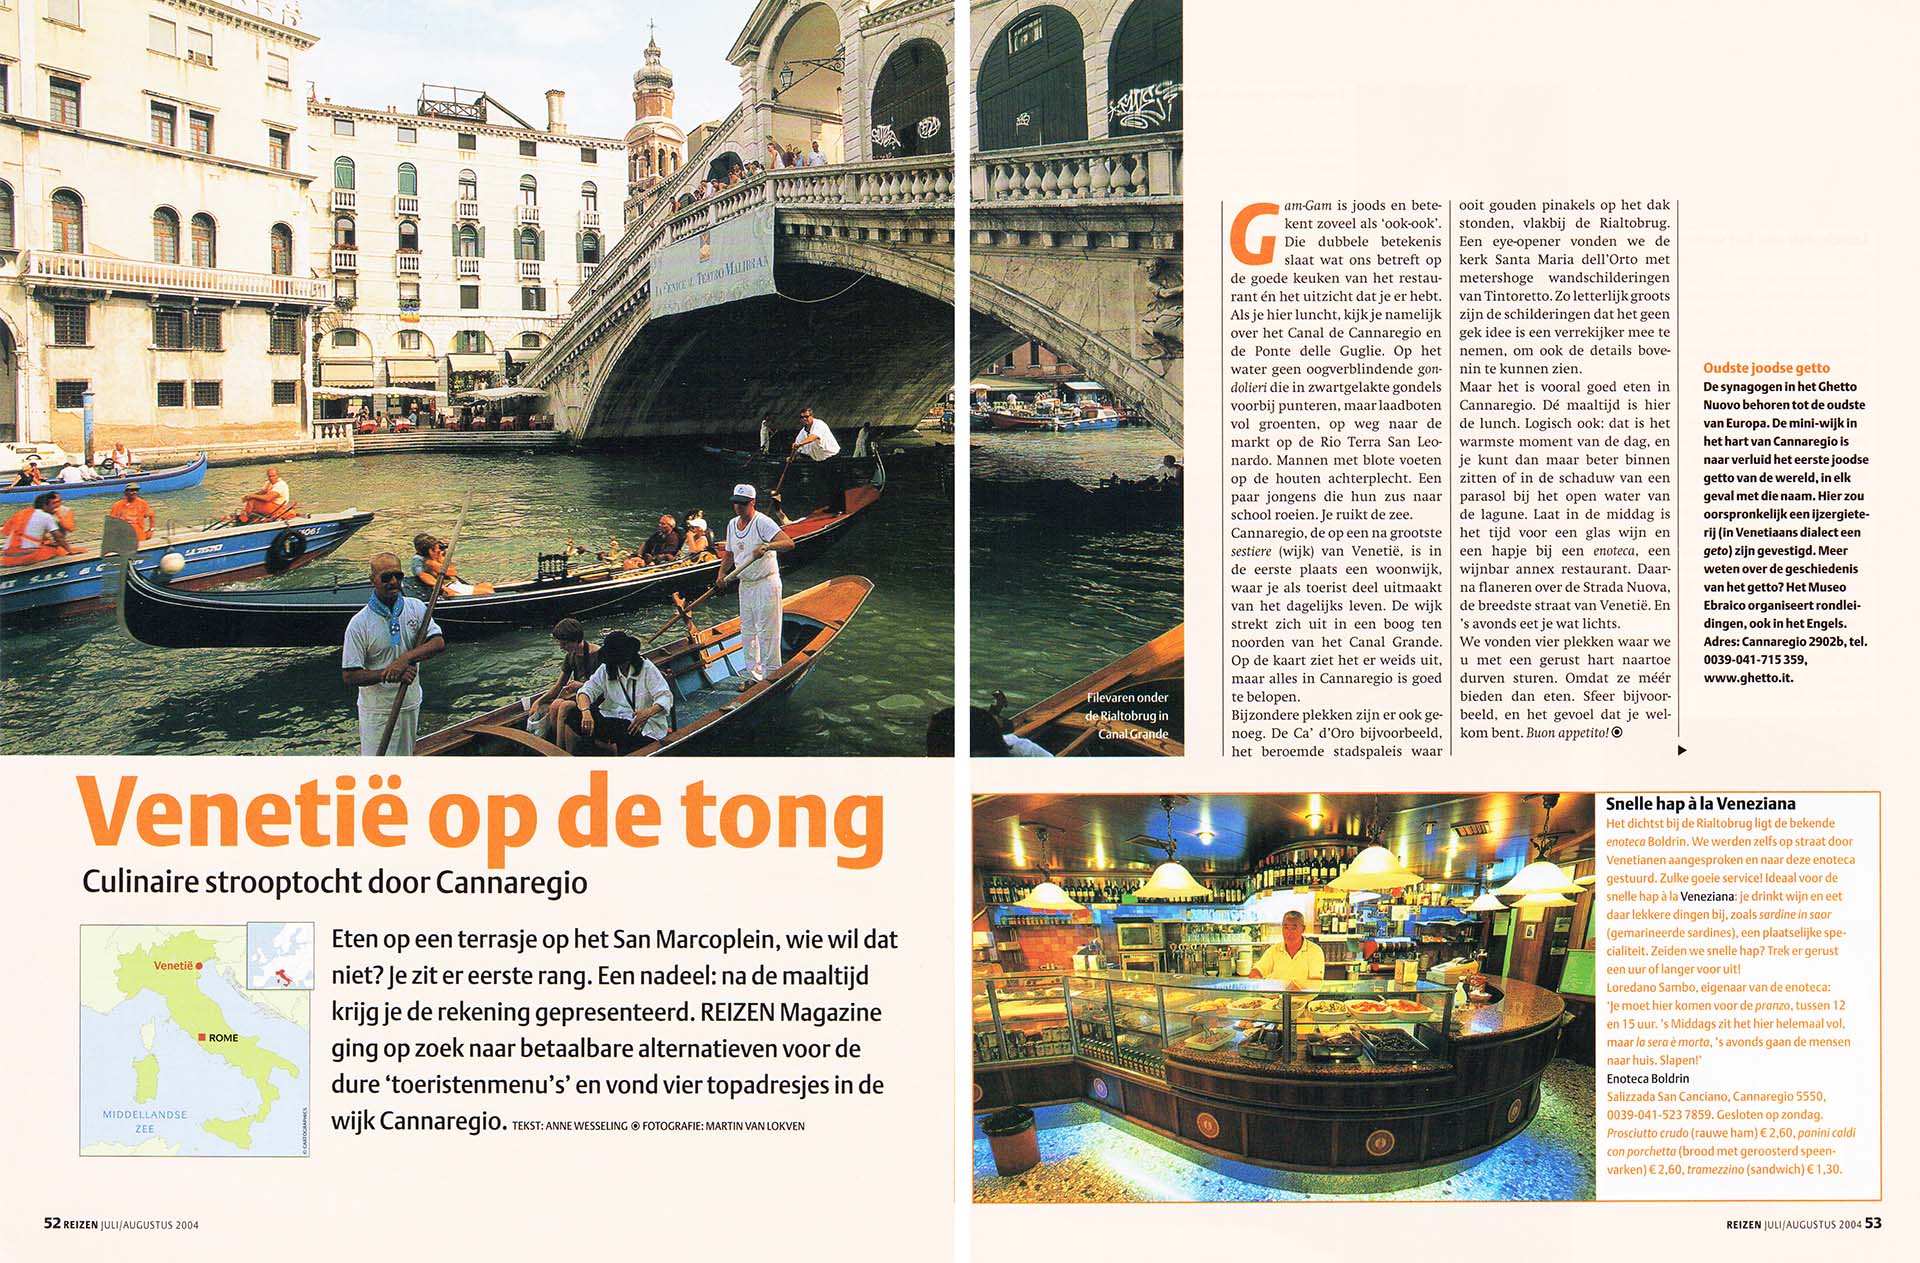 Publicatie over culinair Venetië, in ANWB Reizen Magazine, ediite juli/augustus 2005. Gondels bij de Rialto brug en ijs restaurant.